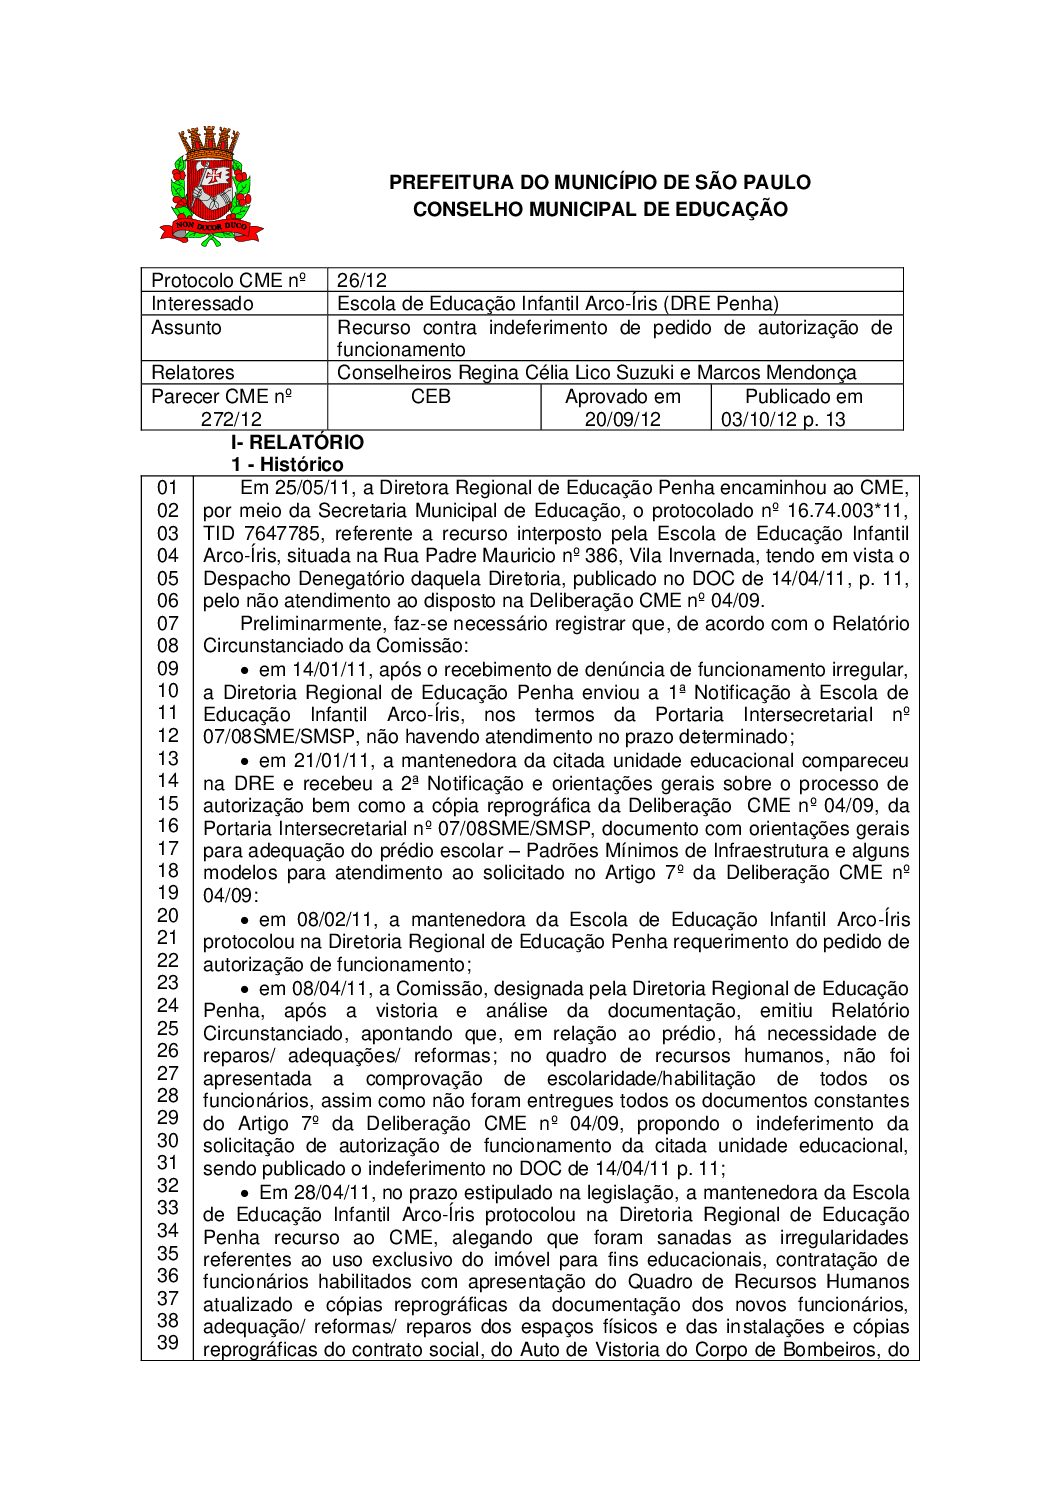 Parecer CME nº 272/2012 - Escola de Educação Infantil Arco-Íris (DRE Penha) - Recurso contra indeferimento de pedido de autorização de funcionamento 